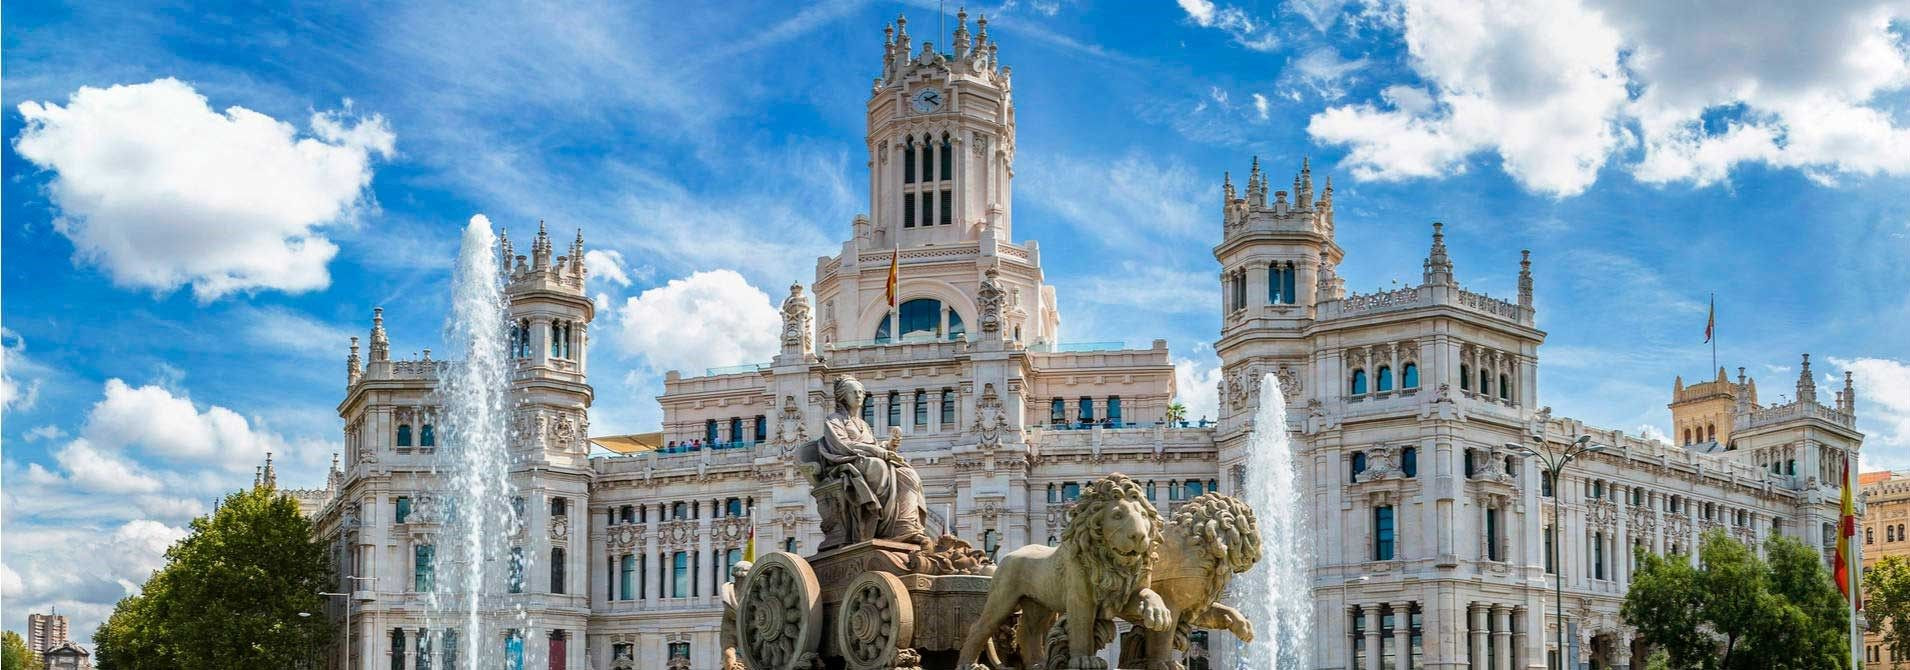 Ενοικίαση αυτοκινήτου στο Λεγκανές της Μαδρίτης